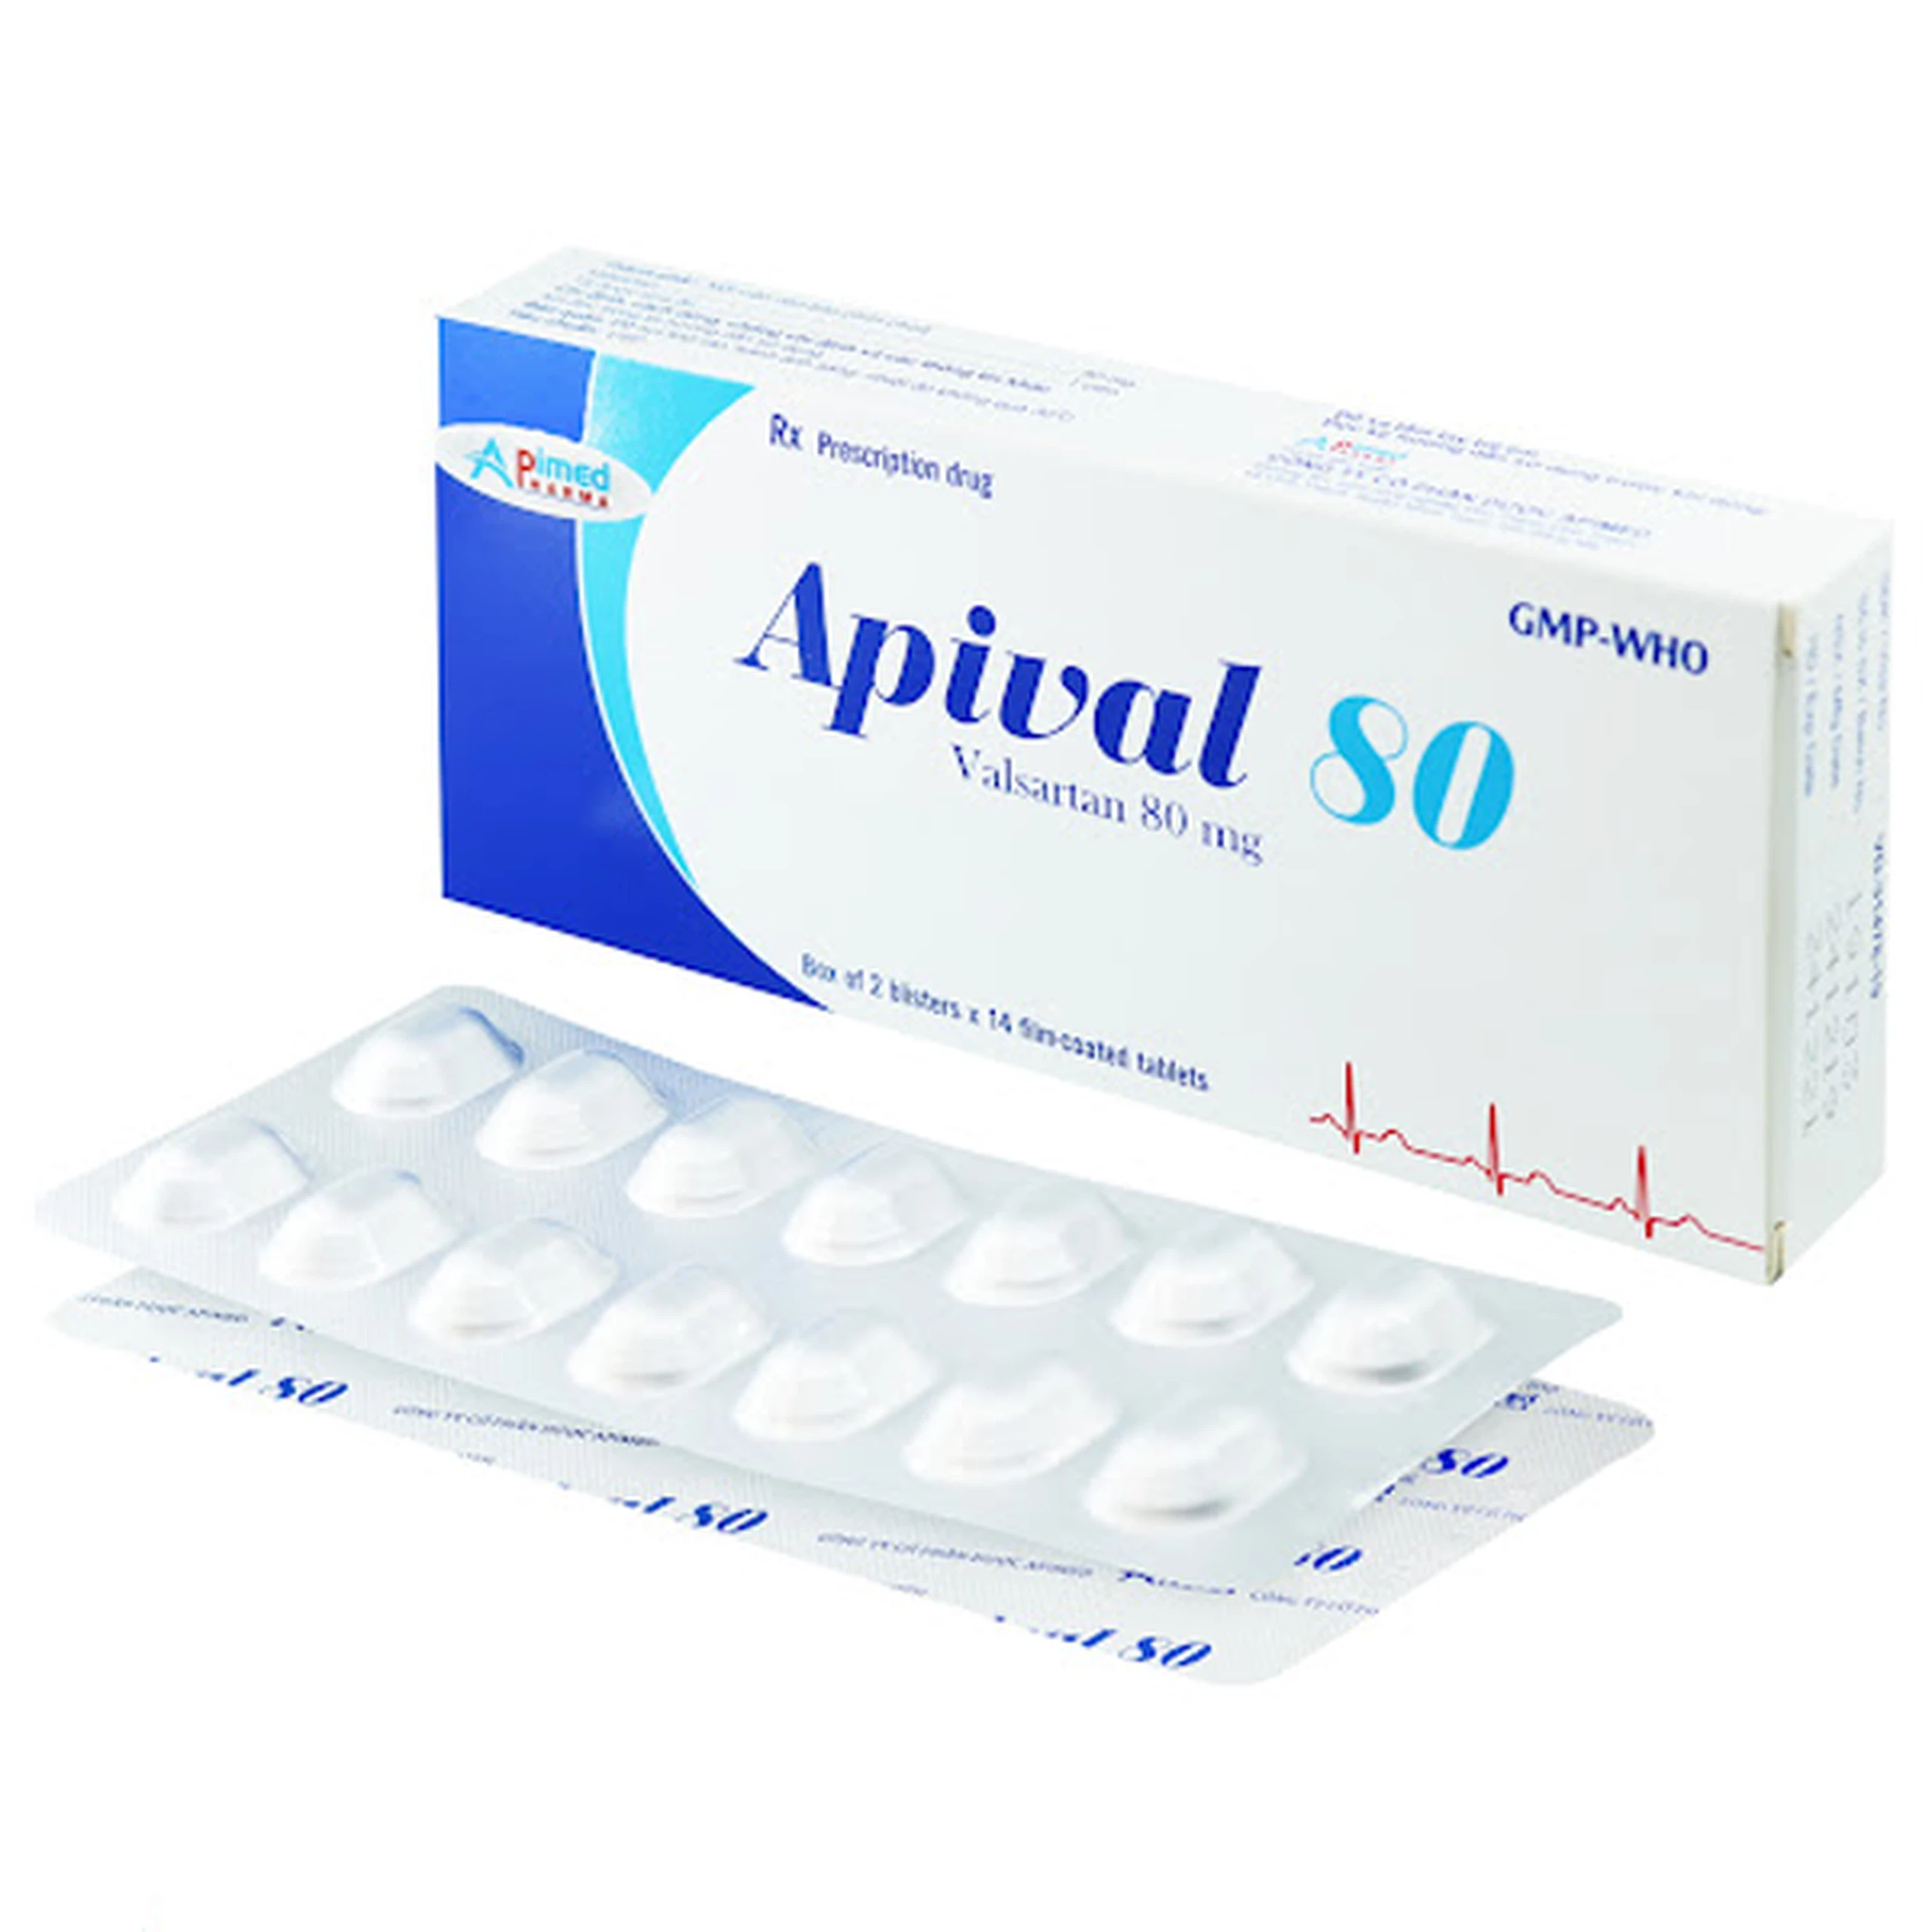 Thuốc Apival 80 Apimed điều trị tăng huyết áp (2 vỉ x 14 viên)